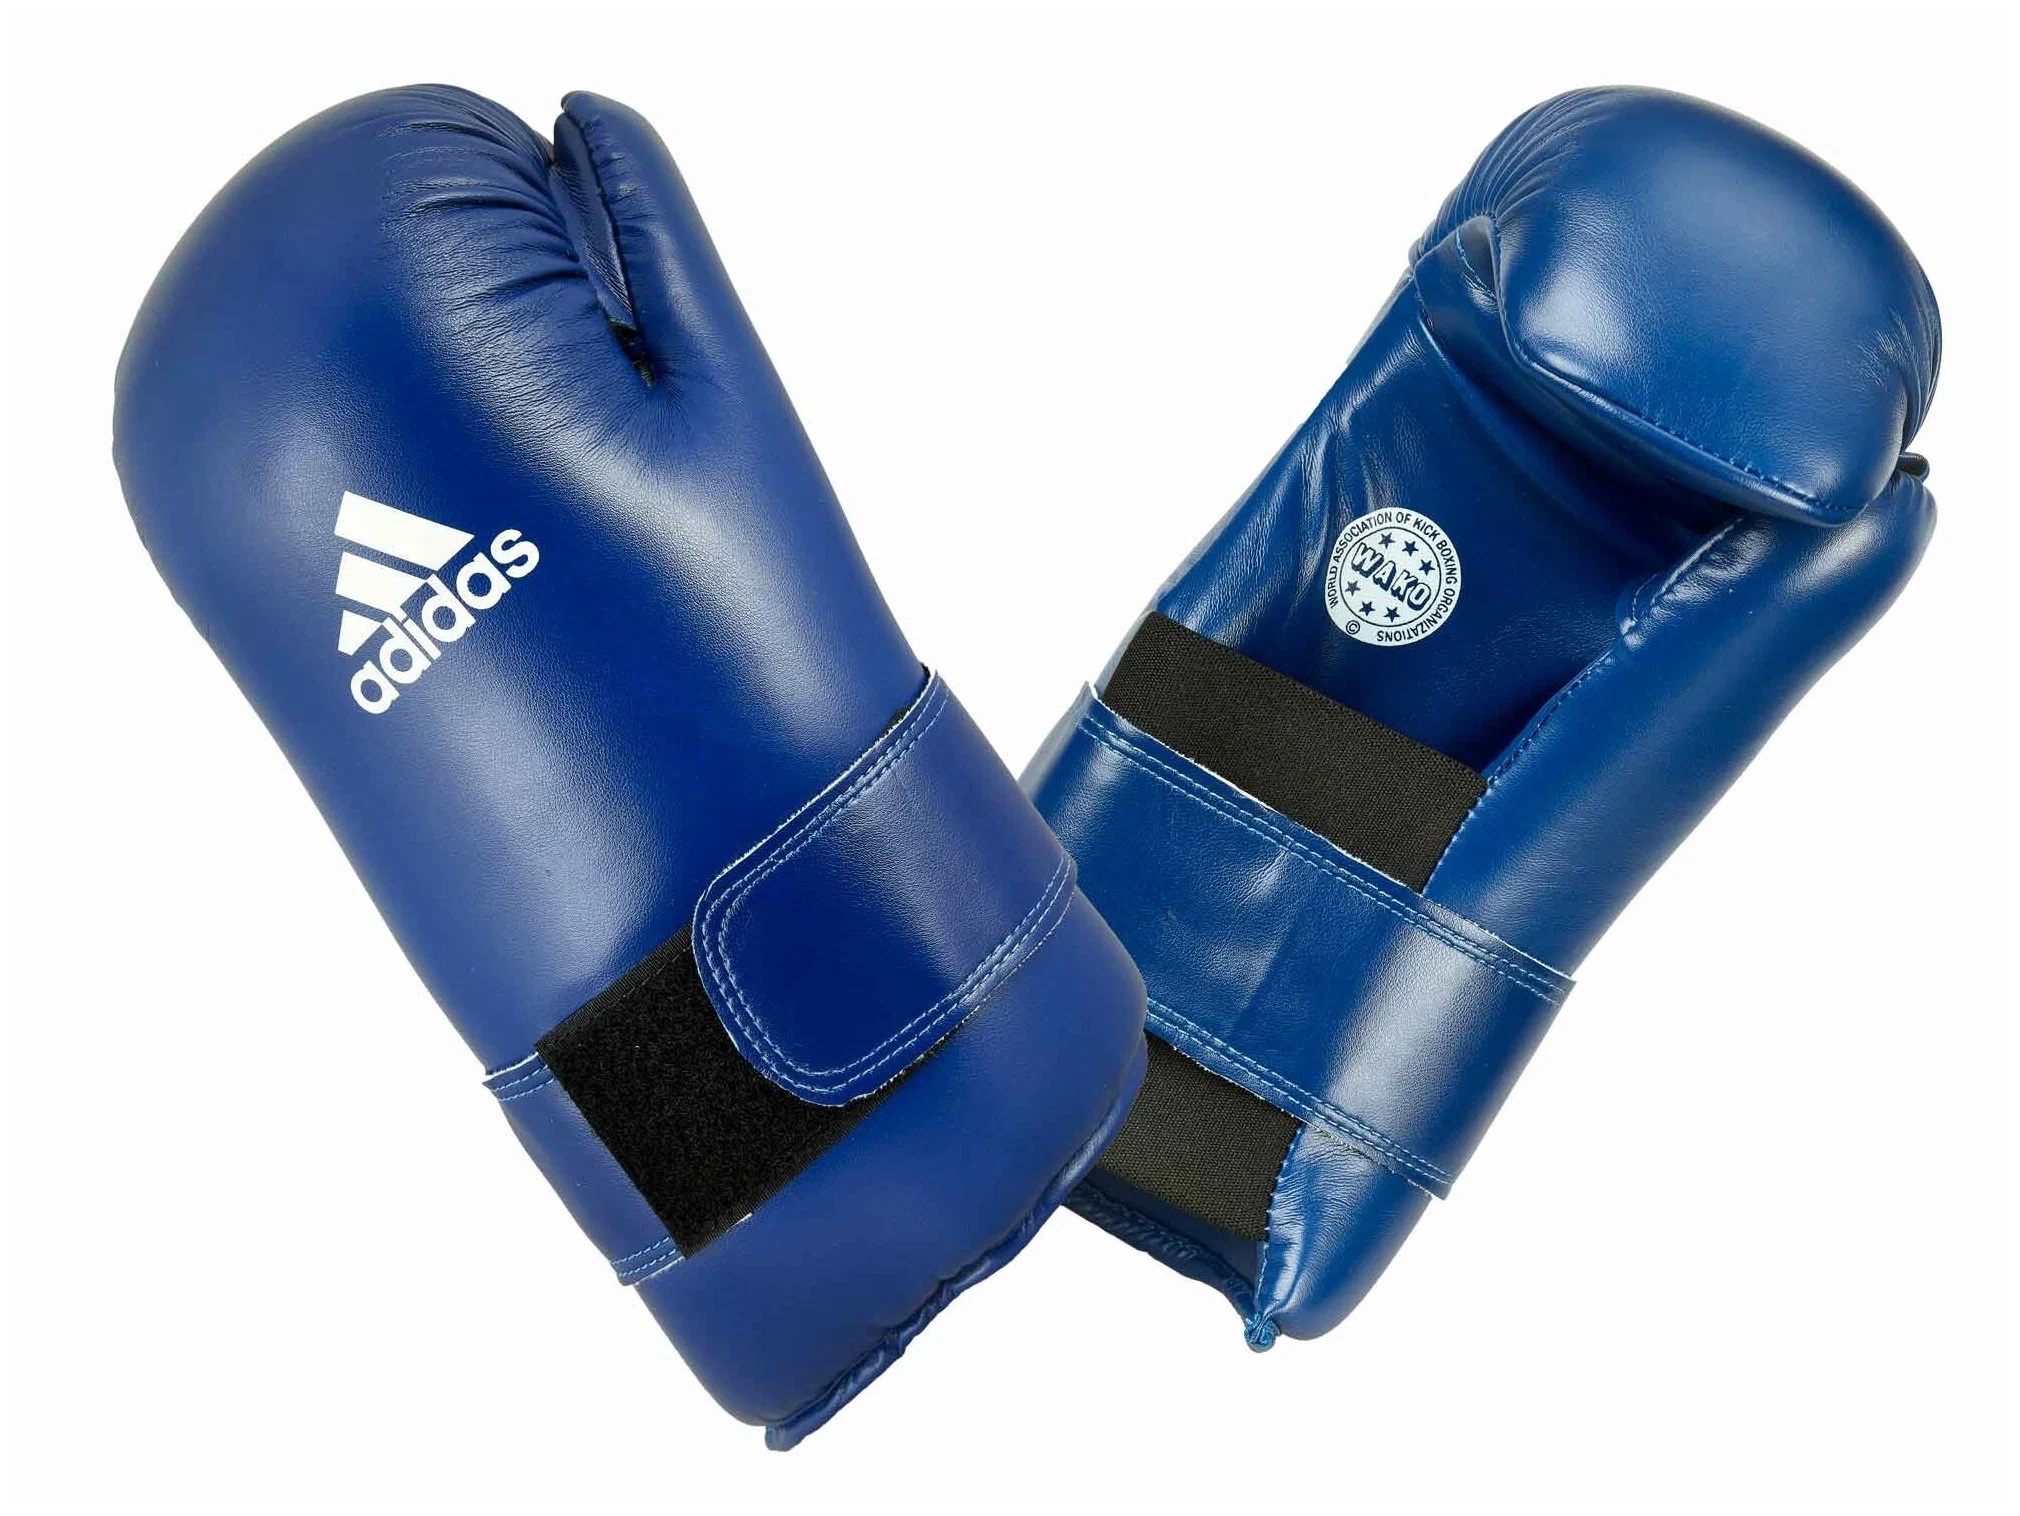 Перчатки полуконтакт WAKO Kickboxing Semi Contact Gloves синие (размер L)